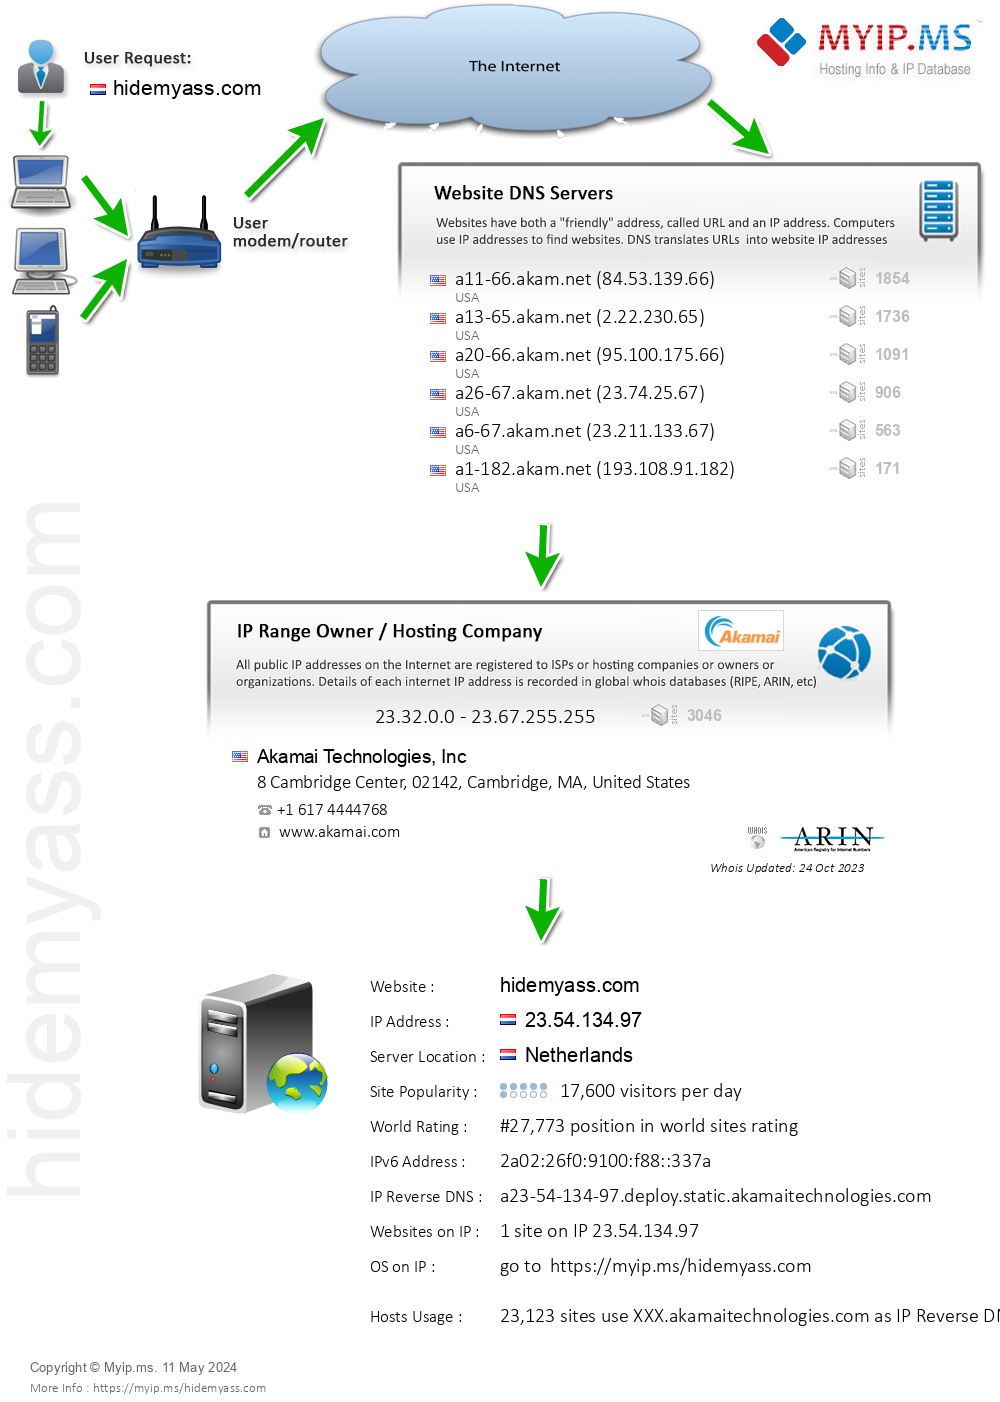 Hidemyass.com - Website Hosting Visual IP Diagram